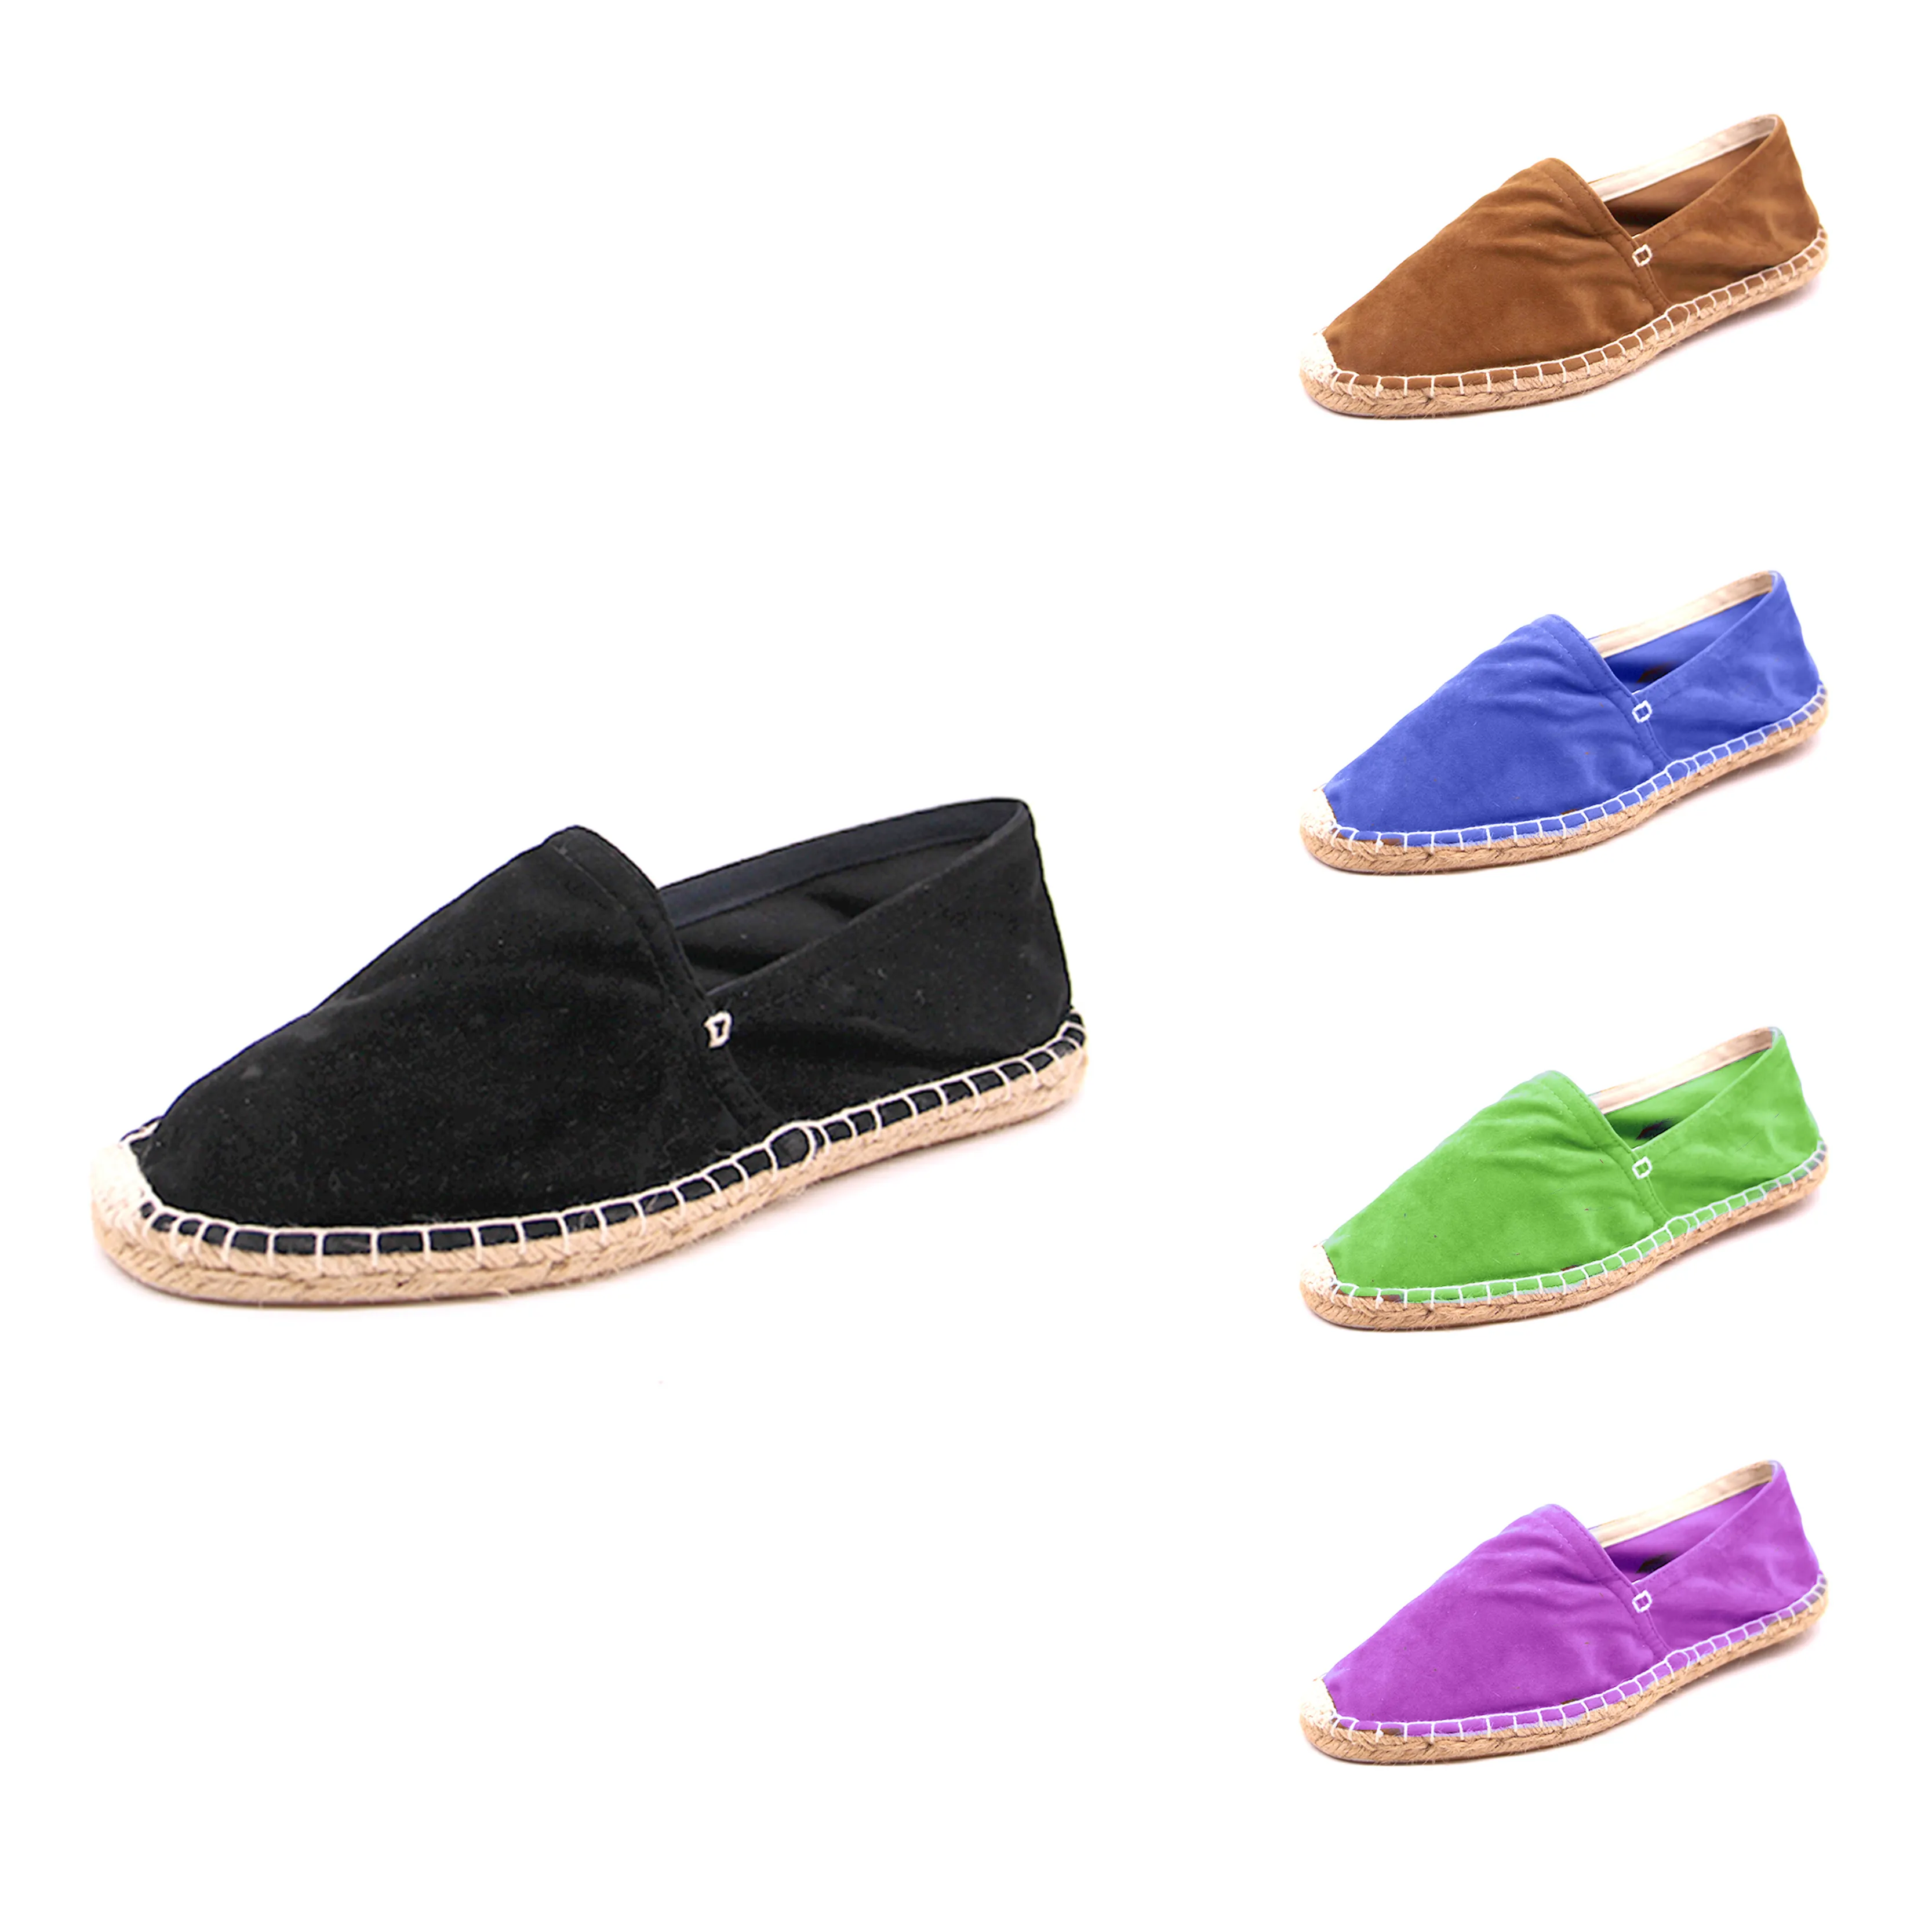 Nicecin alpargatas confortáveis e conveniente, sapatos ao ar livre, coloridas